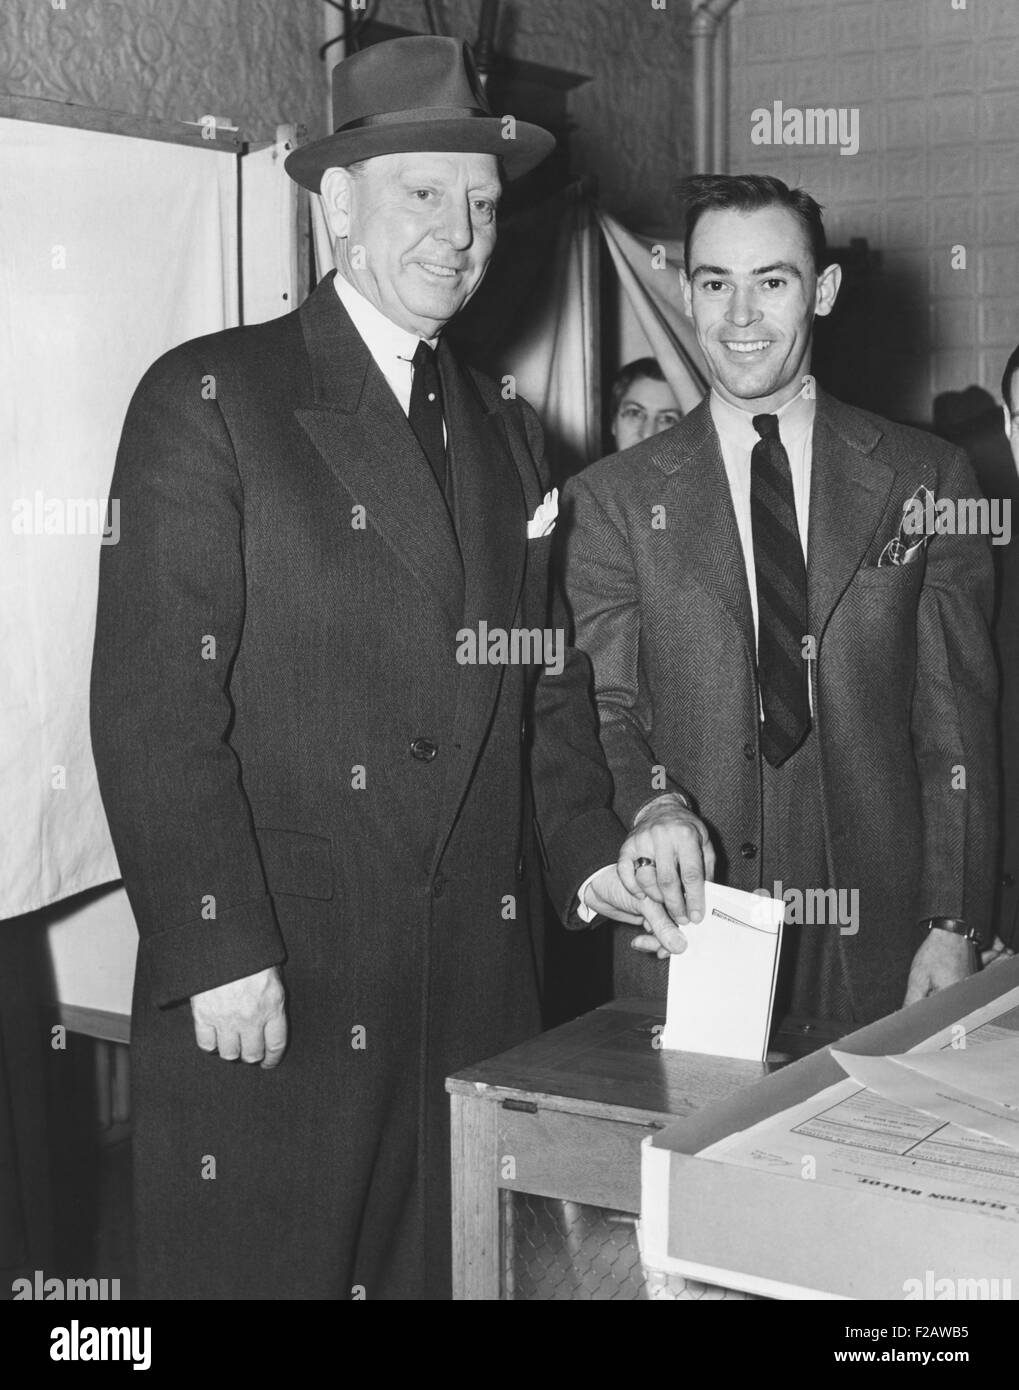 El alcalde de la ciudad de Jersey Frank Hagen (izquierda) emitir su voto en las elecciones generales del 5 de noviembre de 1941. Él era un poderoso, atrincheradas, jefe de la ciudad de estilo antiguo y fue alcalde de 1917 a 1947. Él tenía la riqueza de un estimado de 10 millones de dólares cuando se jubiló de un trabajo que nunca pagó más de $8500 por año. (CSU 2015 11 1440) Foto de stock